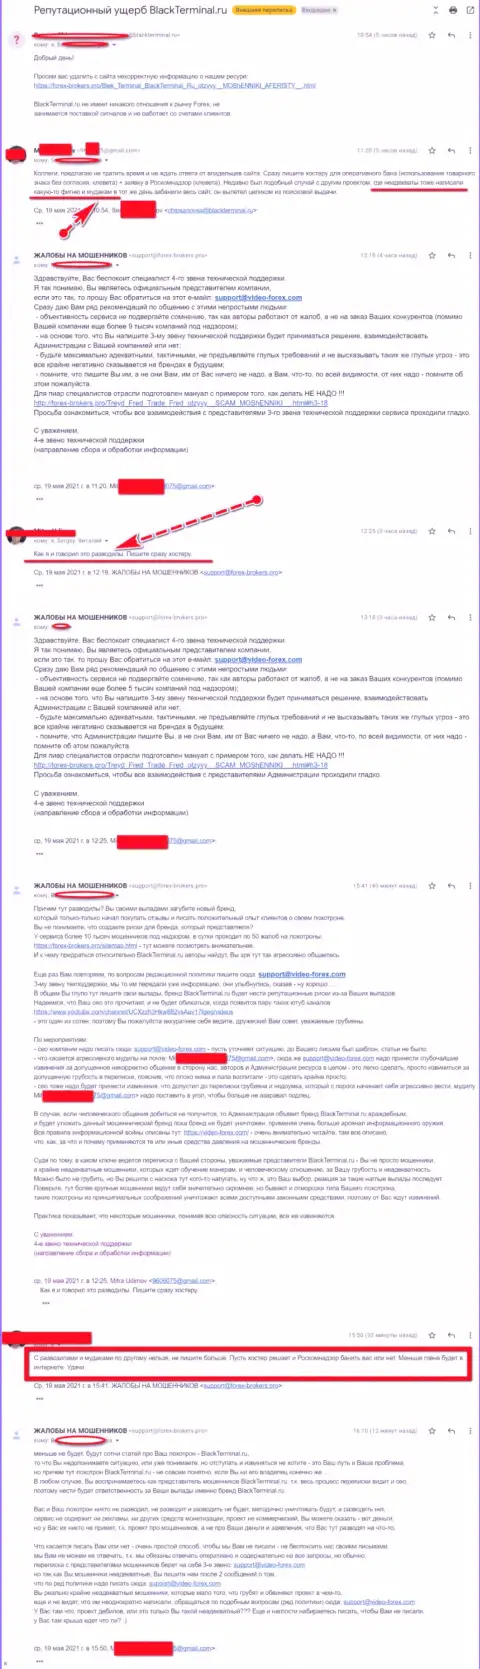 Переписка Администрации сайта, с отзывами о BlackTerminal, с некими представителями данного неправомерно действующего онлайн сервиса